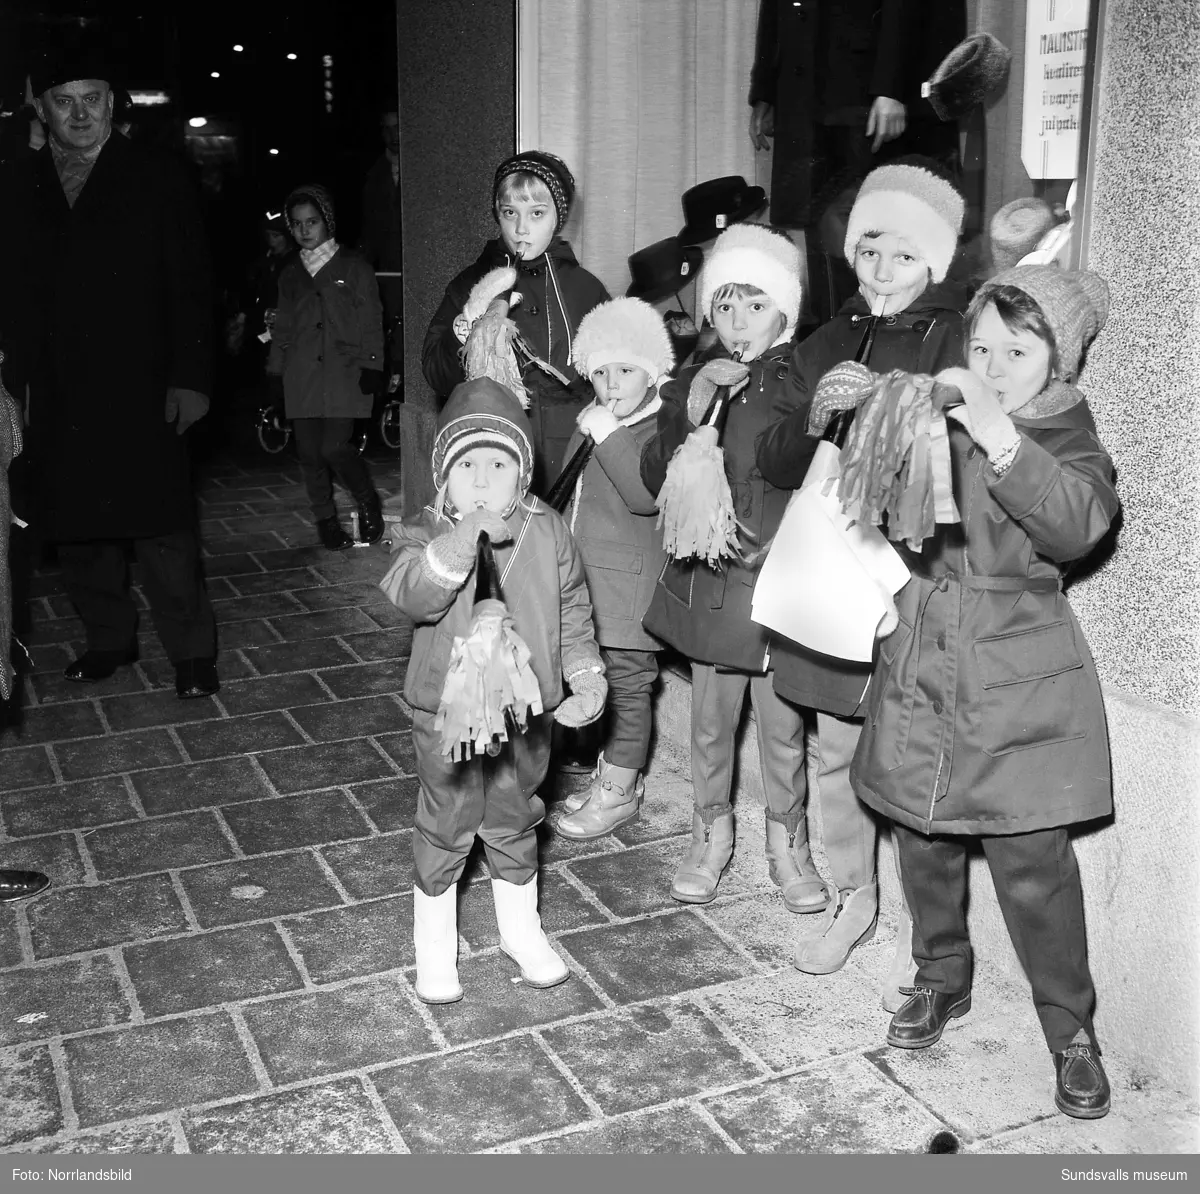 Skyltsöndag 1961. Vid Strömbergs färg flockades barn och vuxna kring en konstnärlig tomte i skyltfönstret.